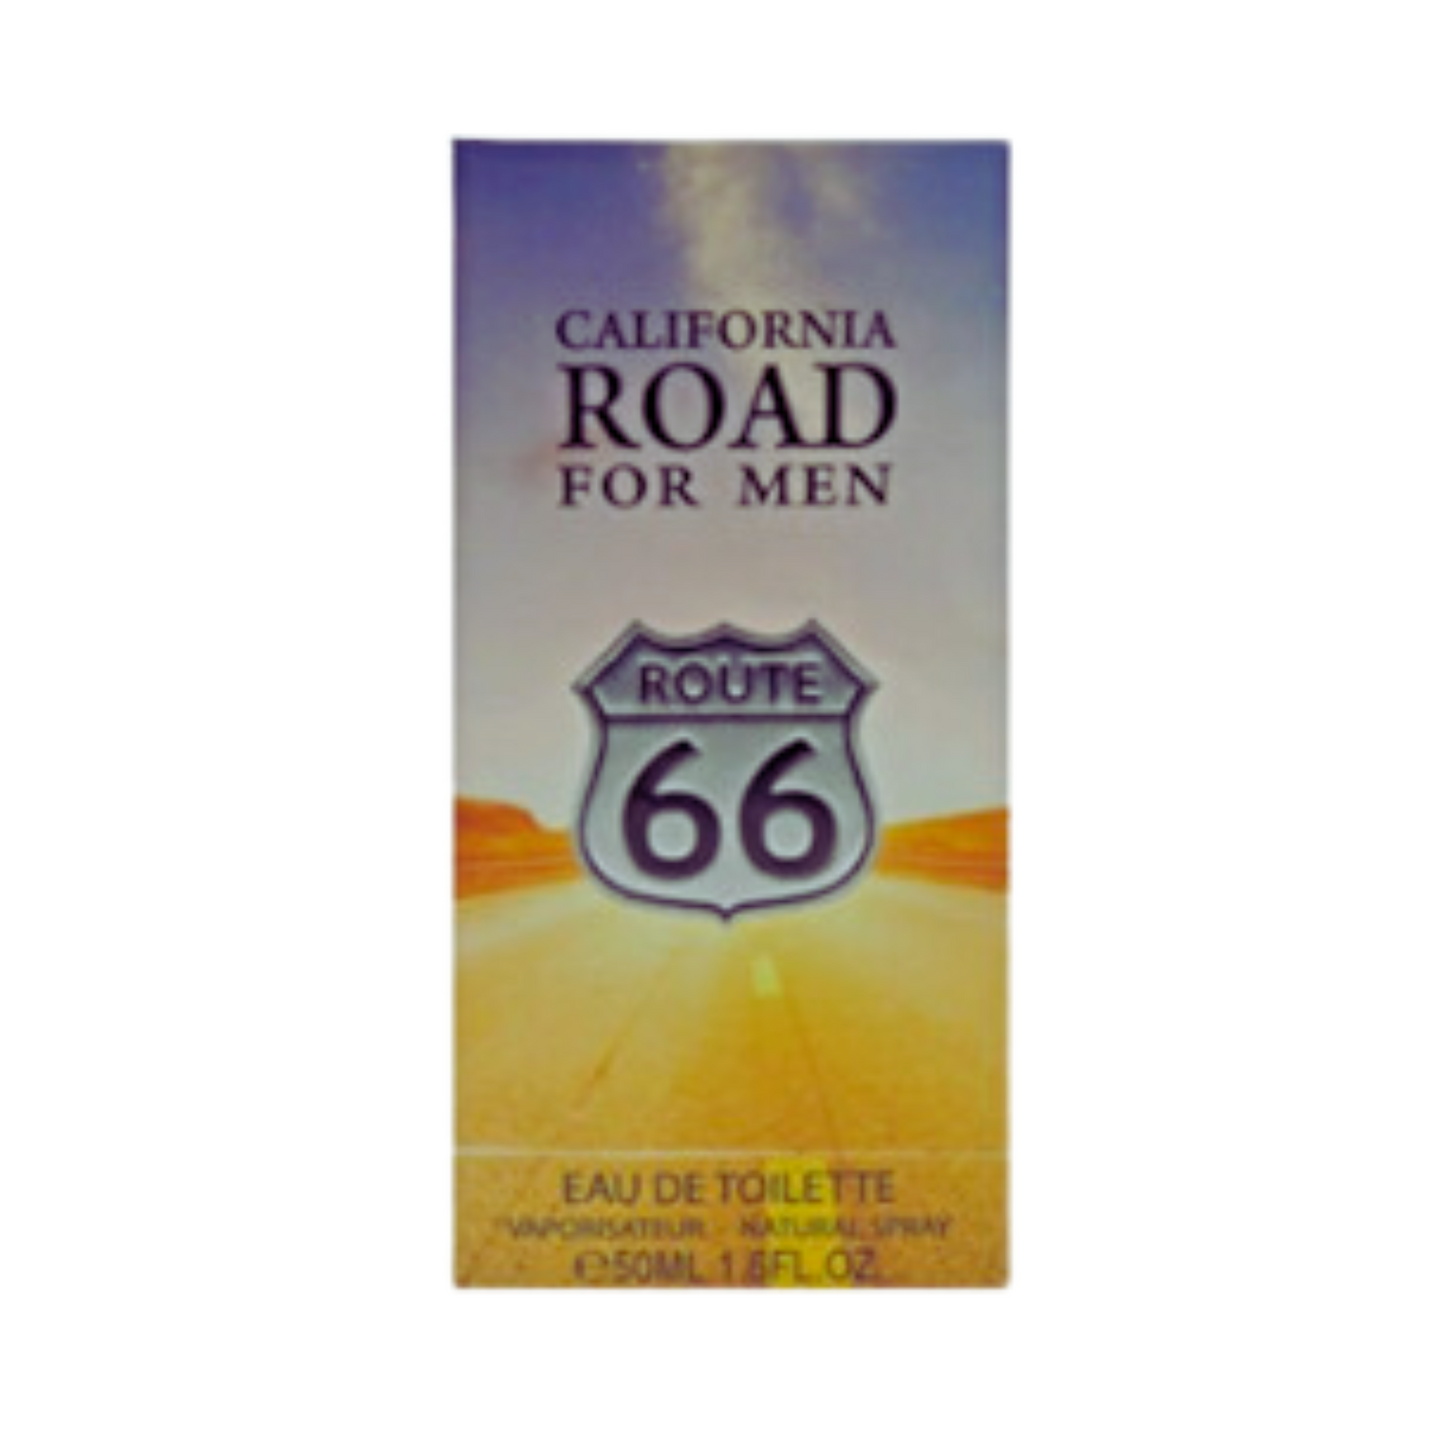 Route 66 California Road For Men 50ml Eau de Toilette